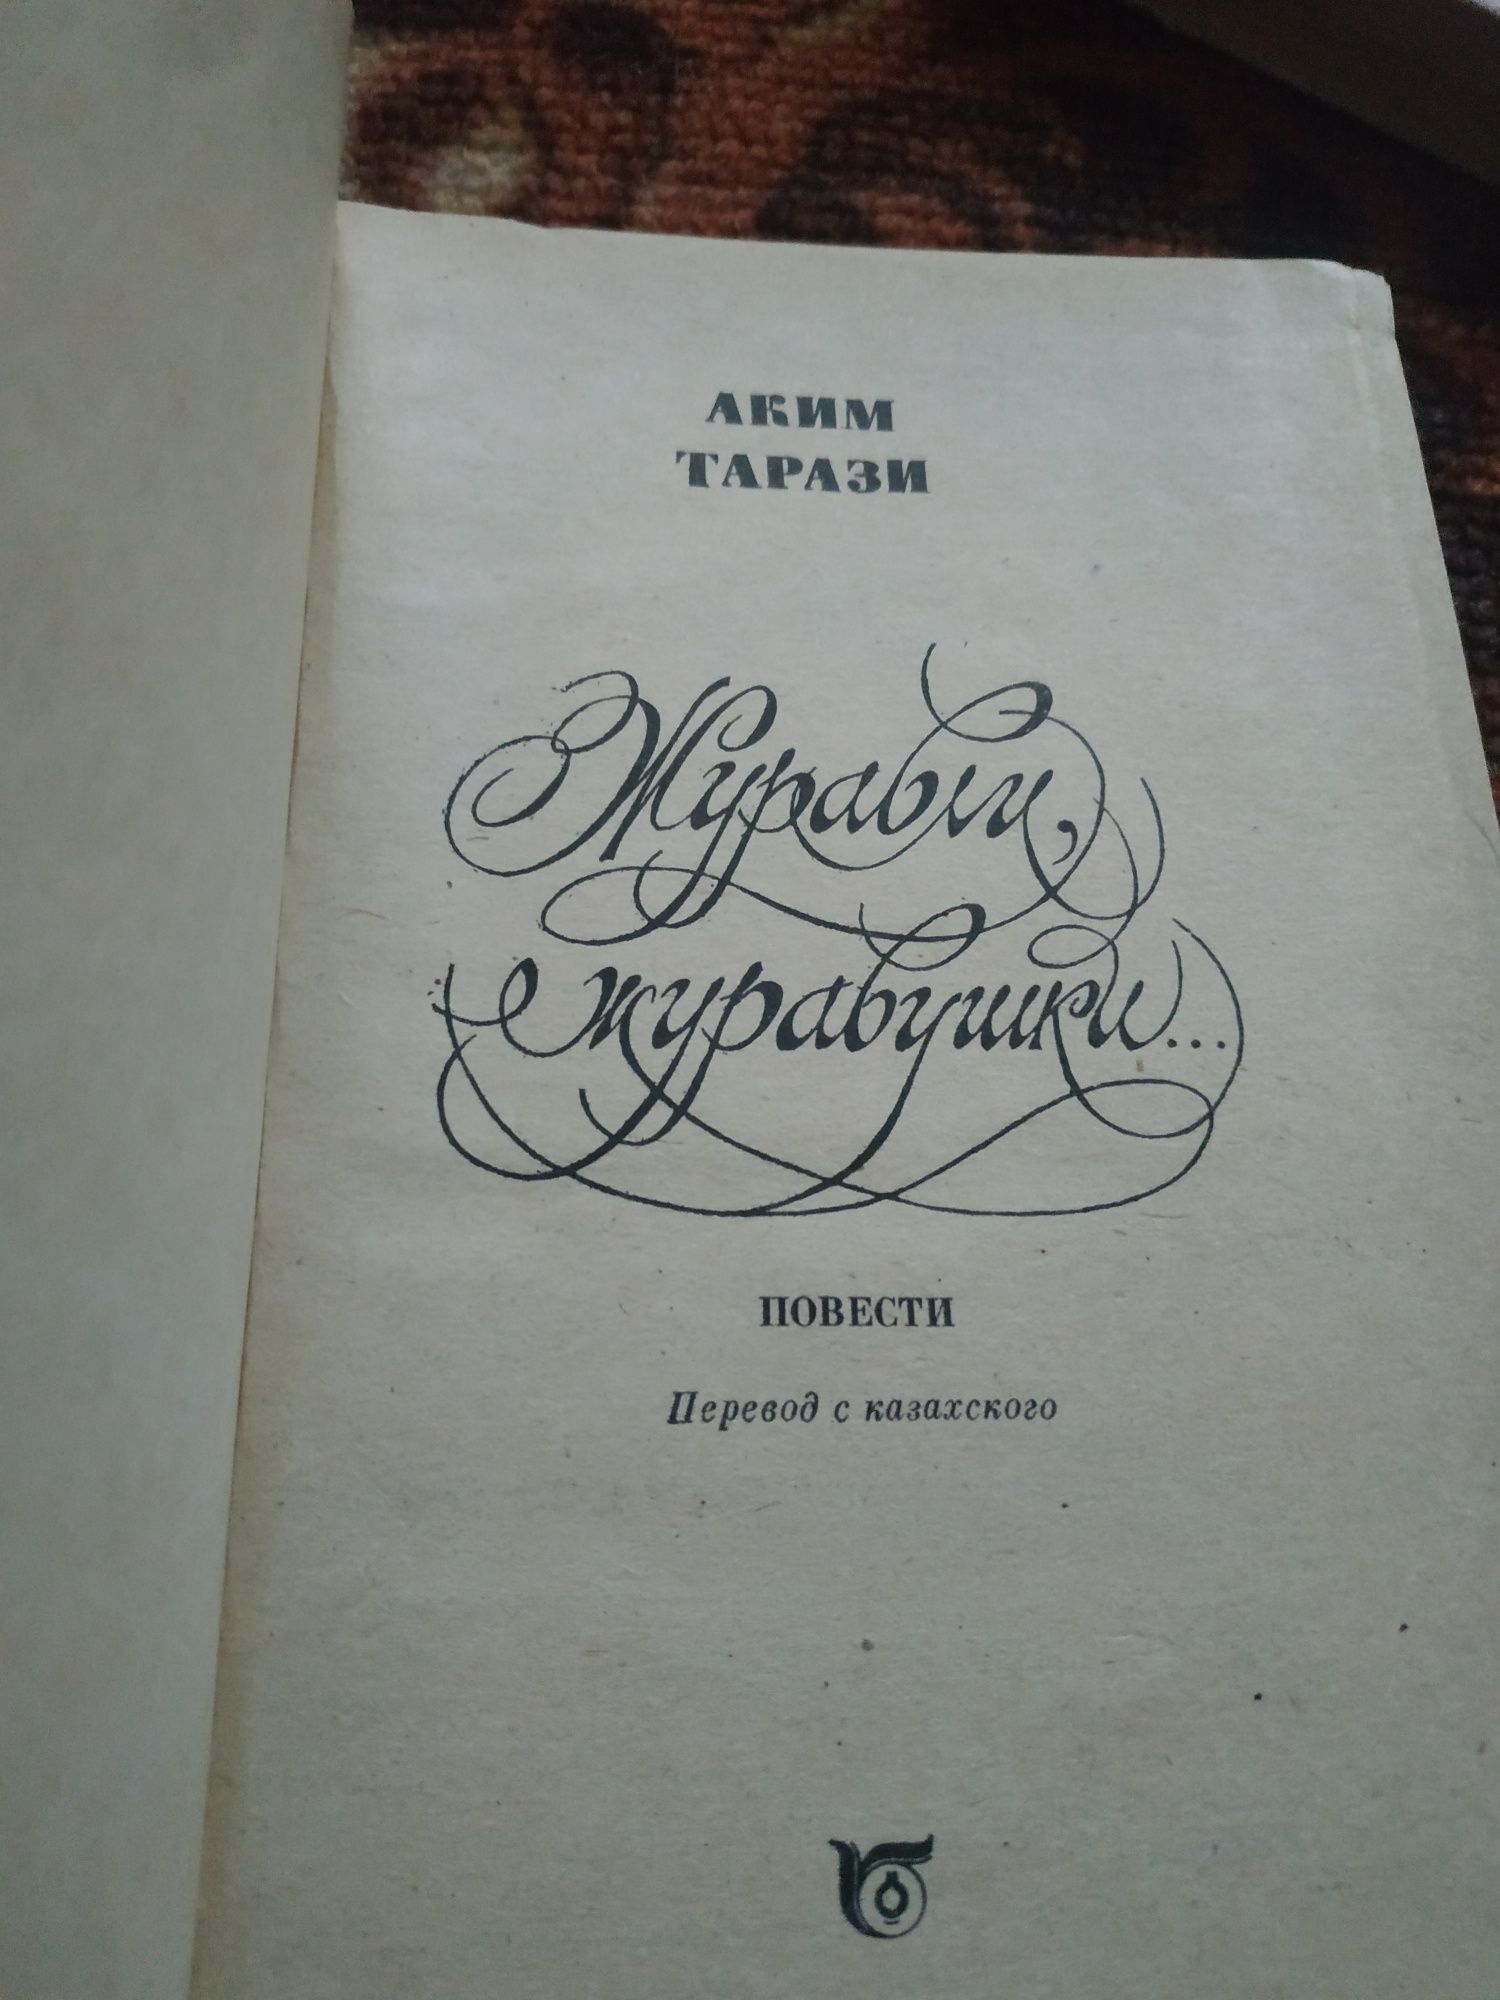 Книги казахских писателей